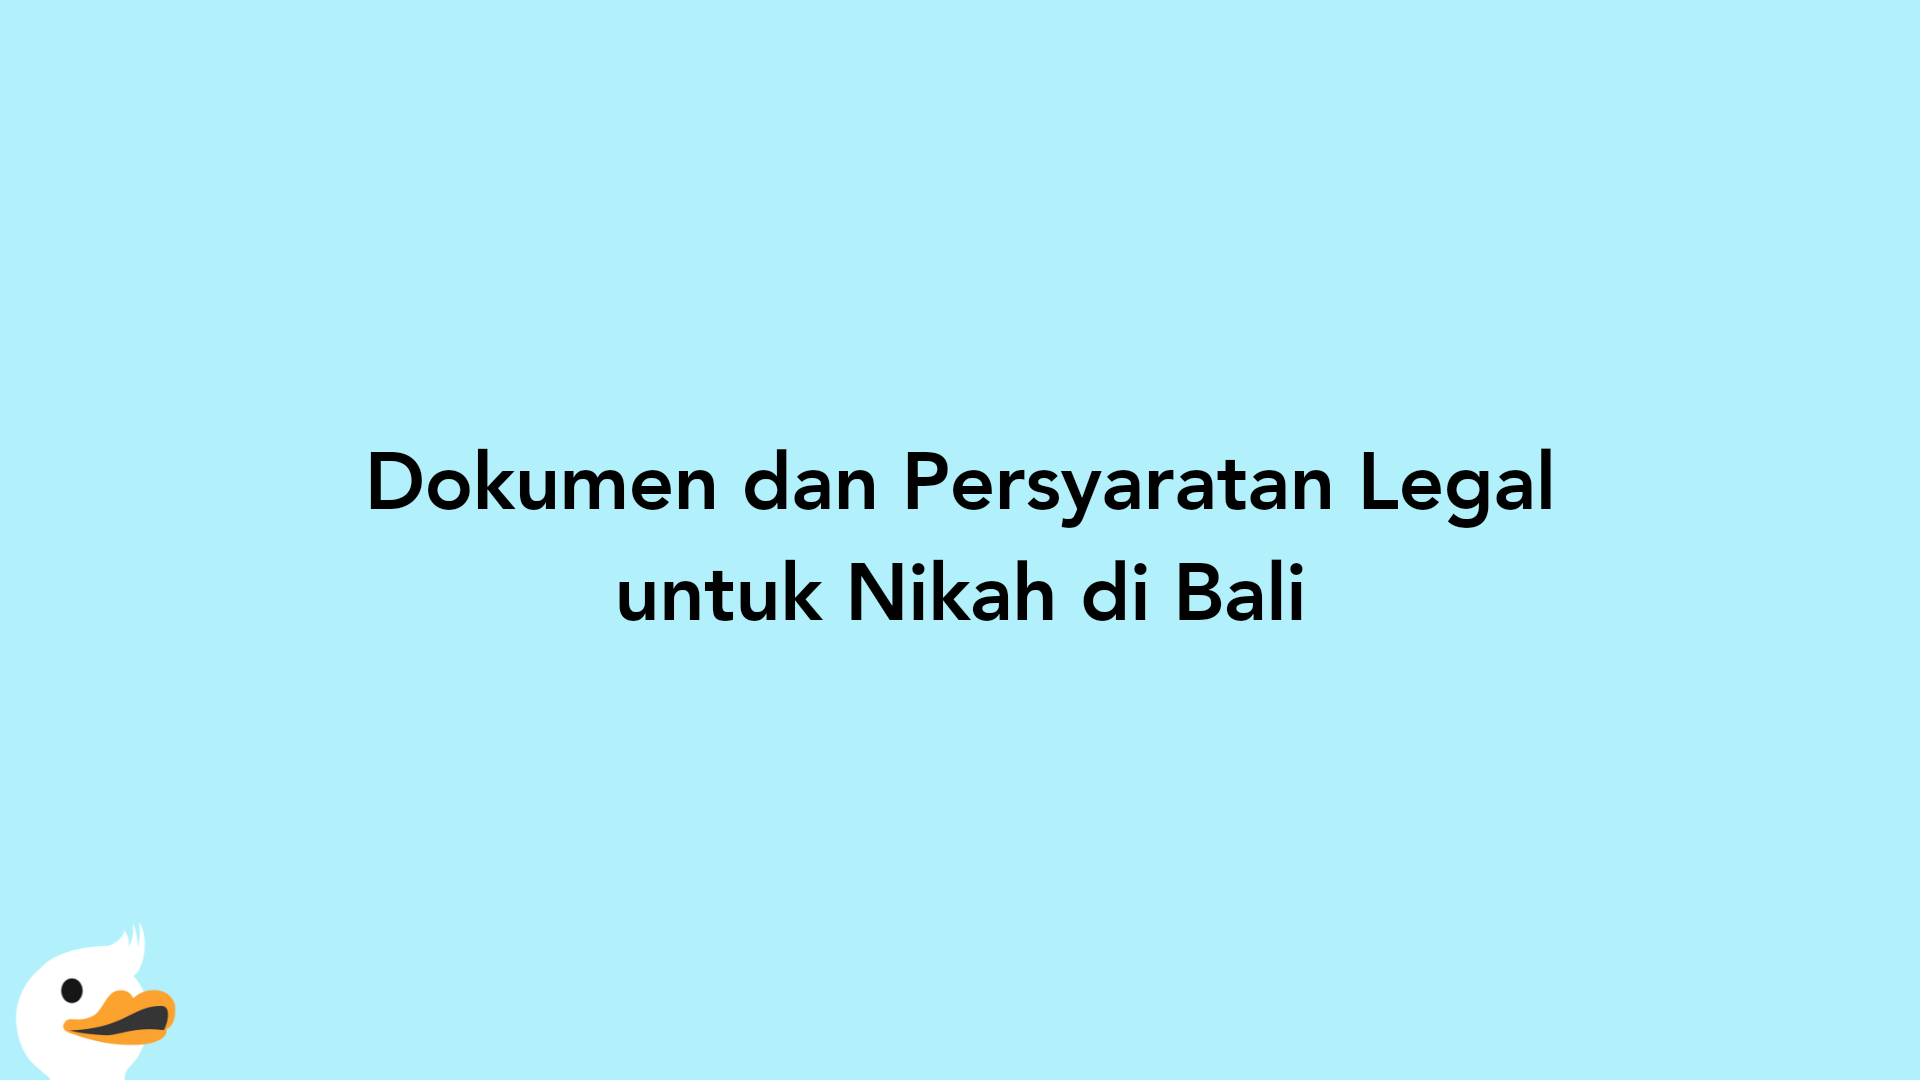 Dokumen dan Persyaratan Legal untuk Nikah di Bali